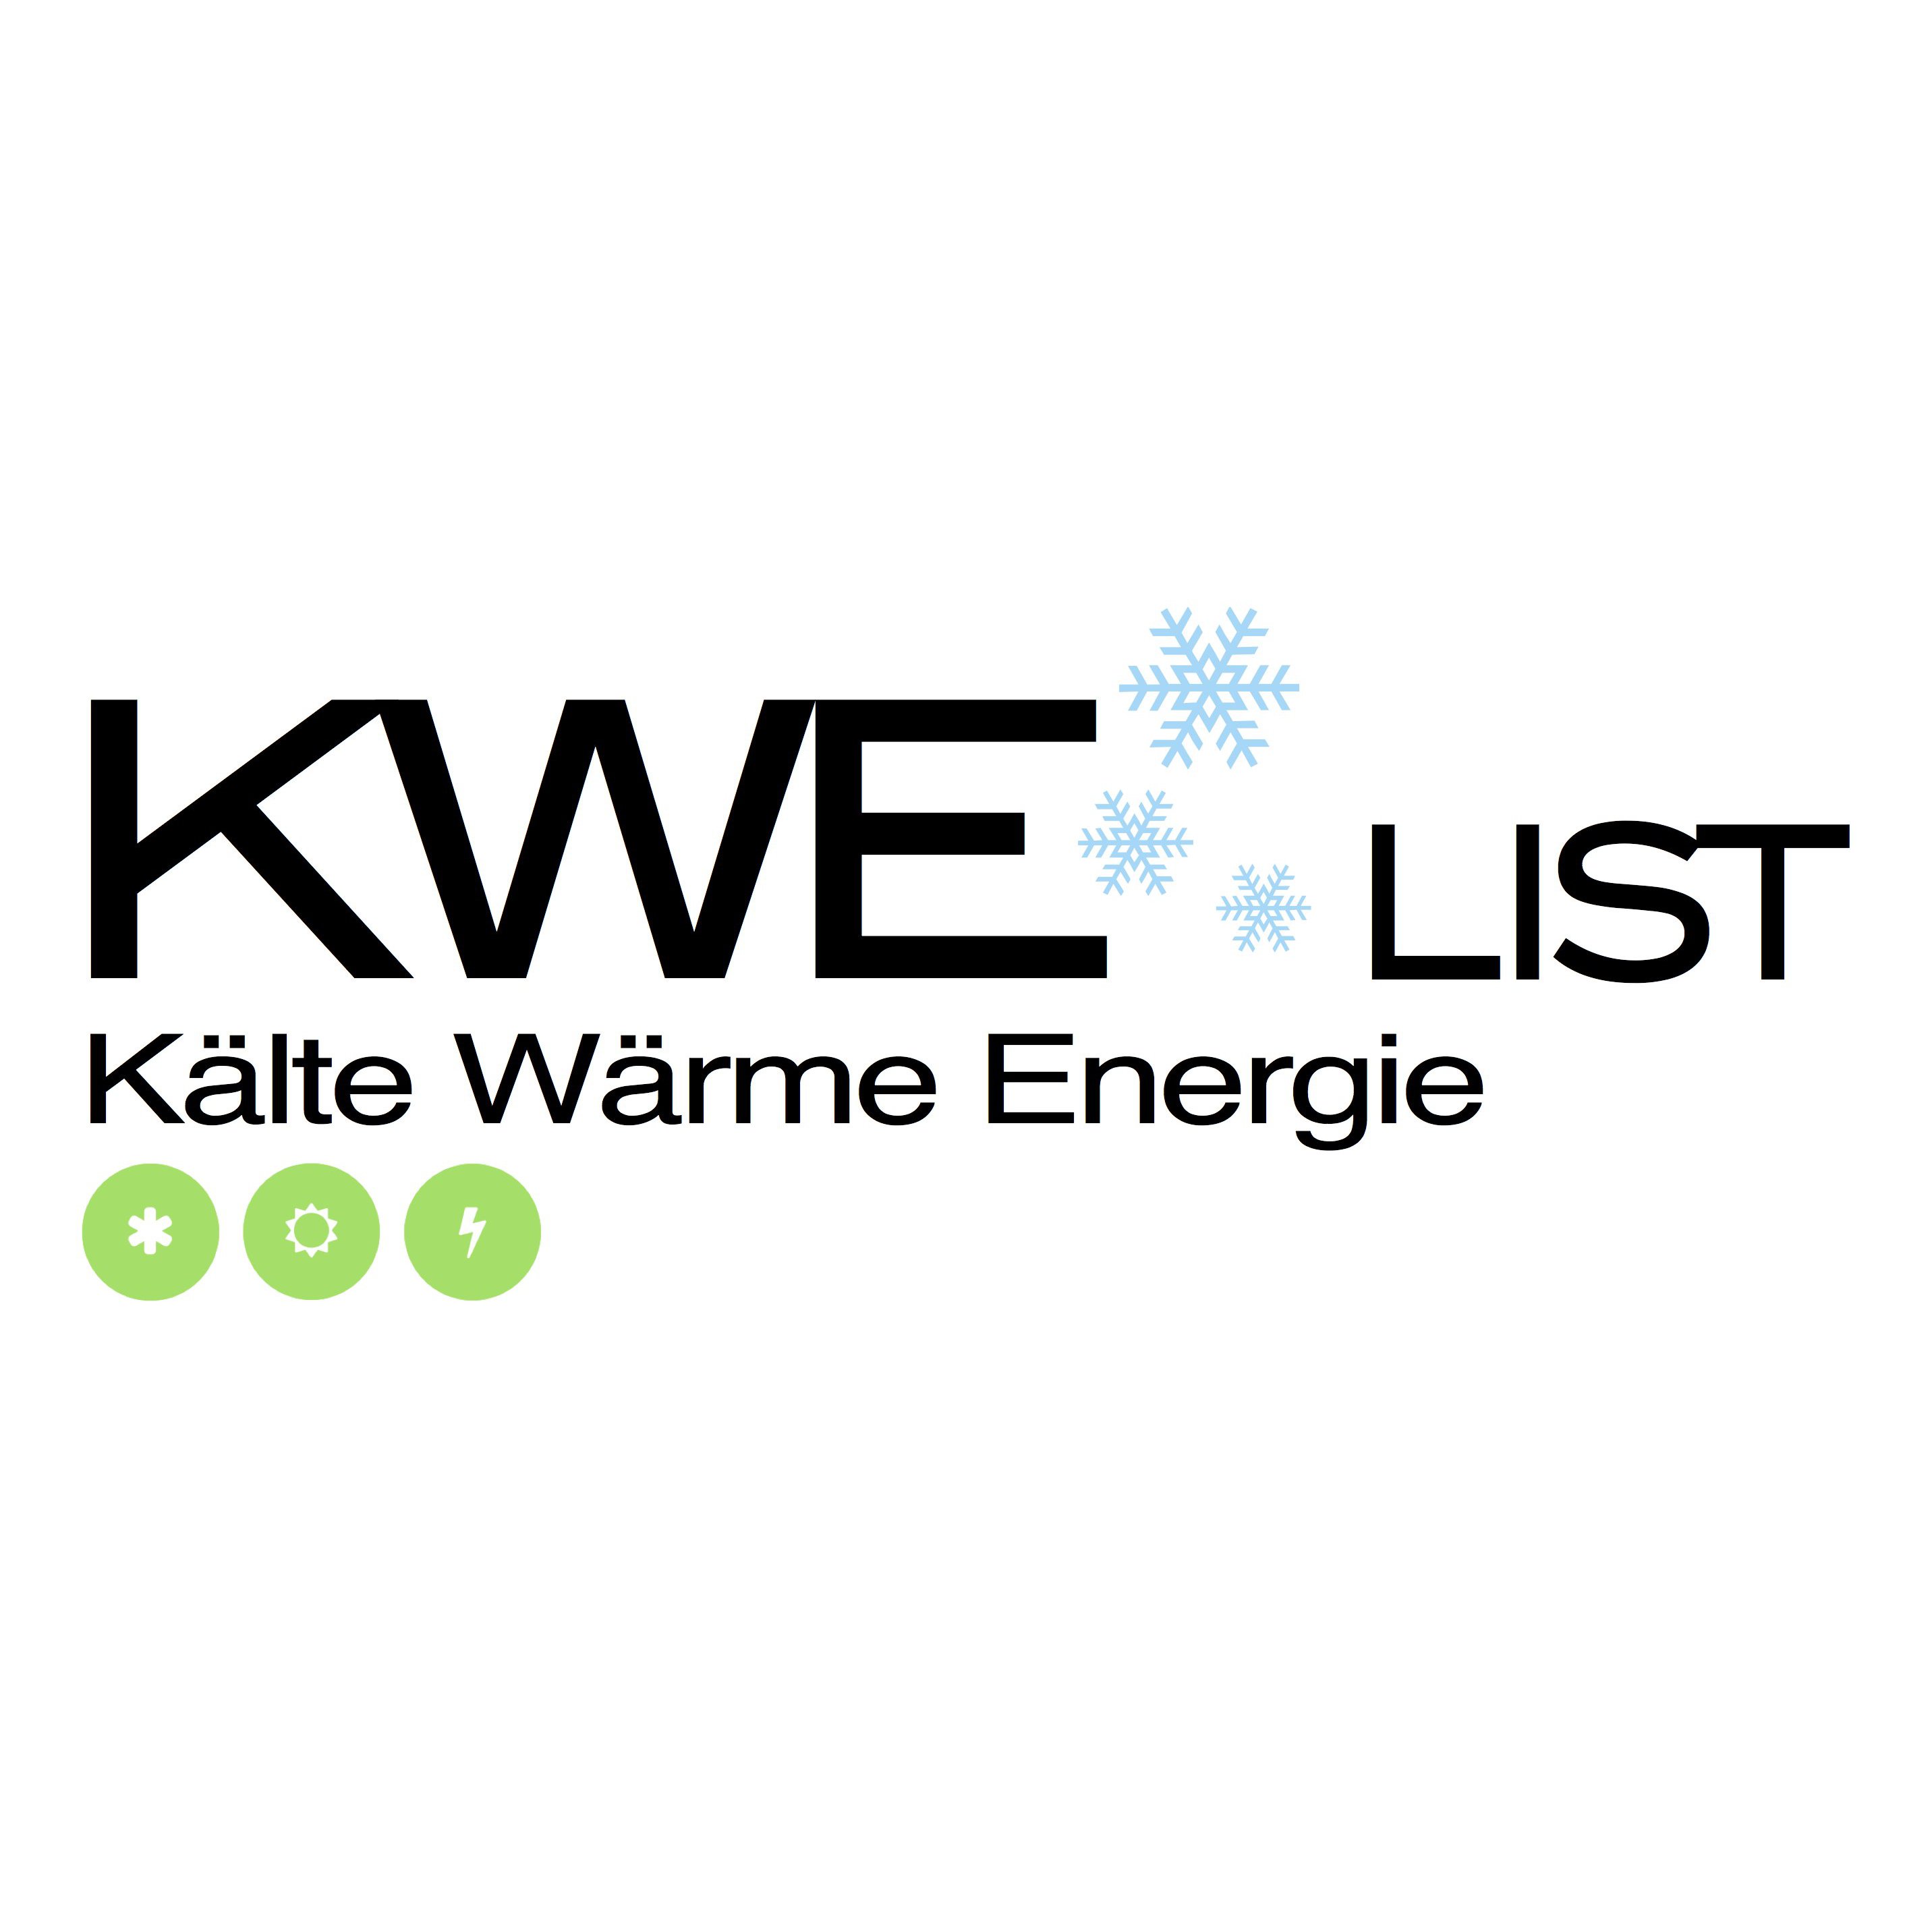 Martin List KWE - Kälte Wärme Energie